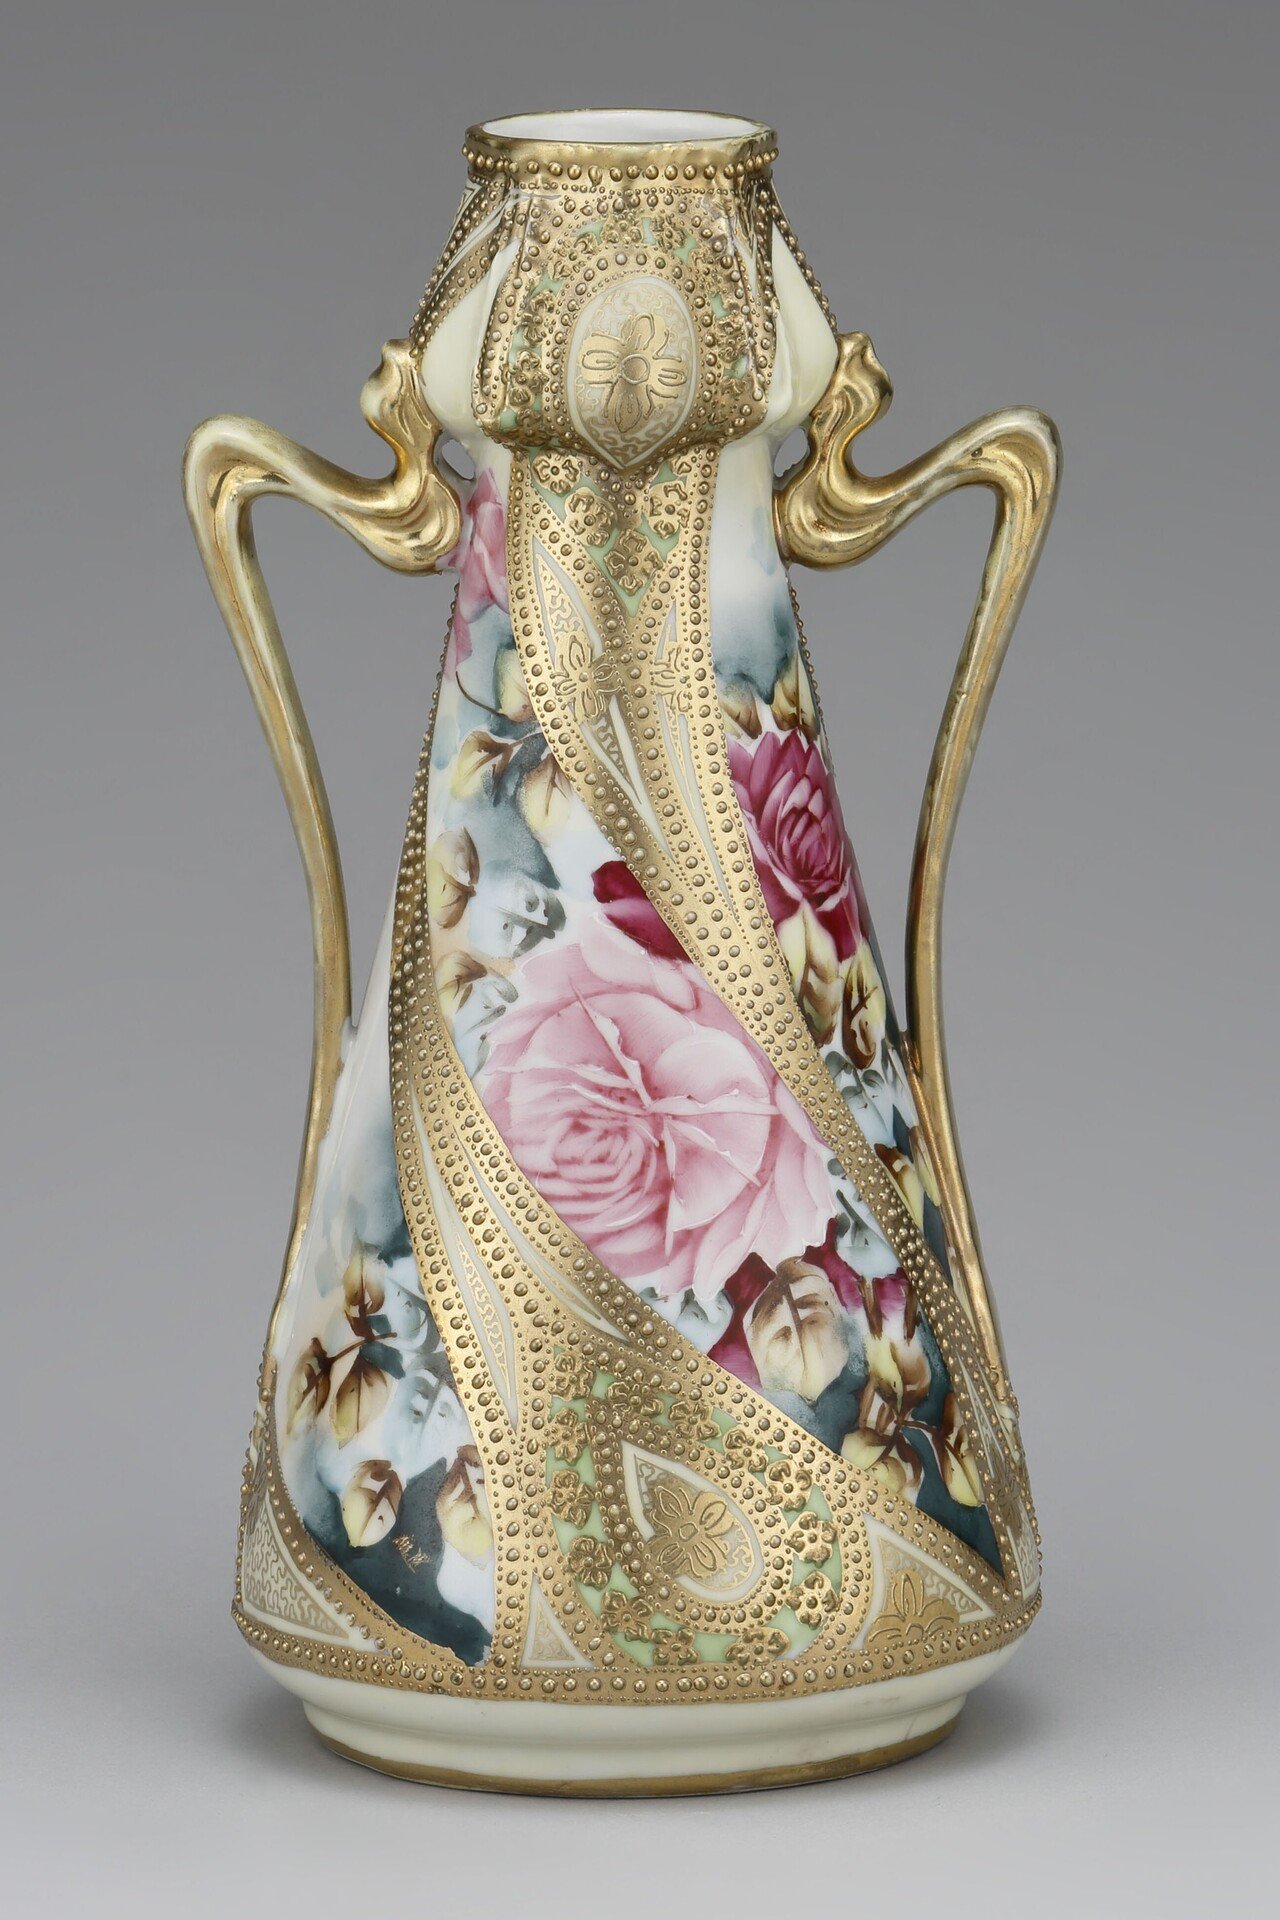 キラキラ光る金盛―オールドノリタケの花瓶を見る―｜横山美術館